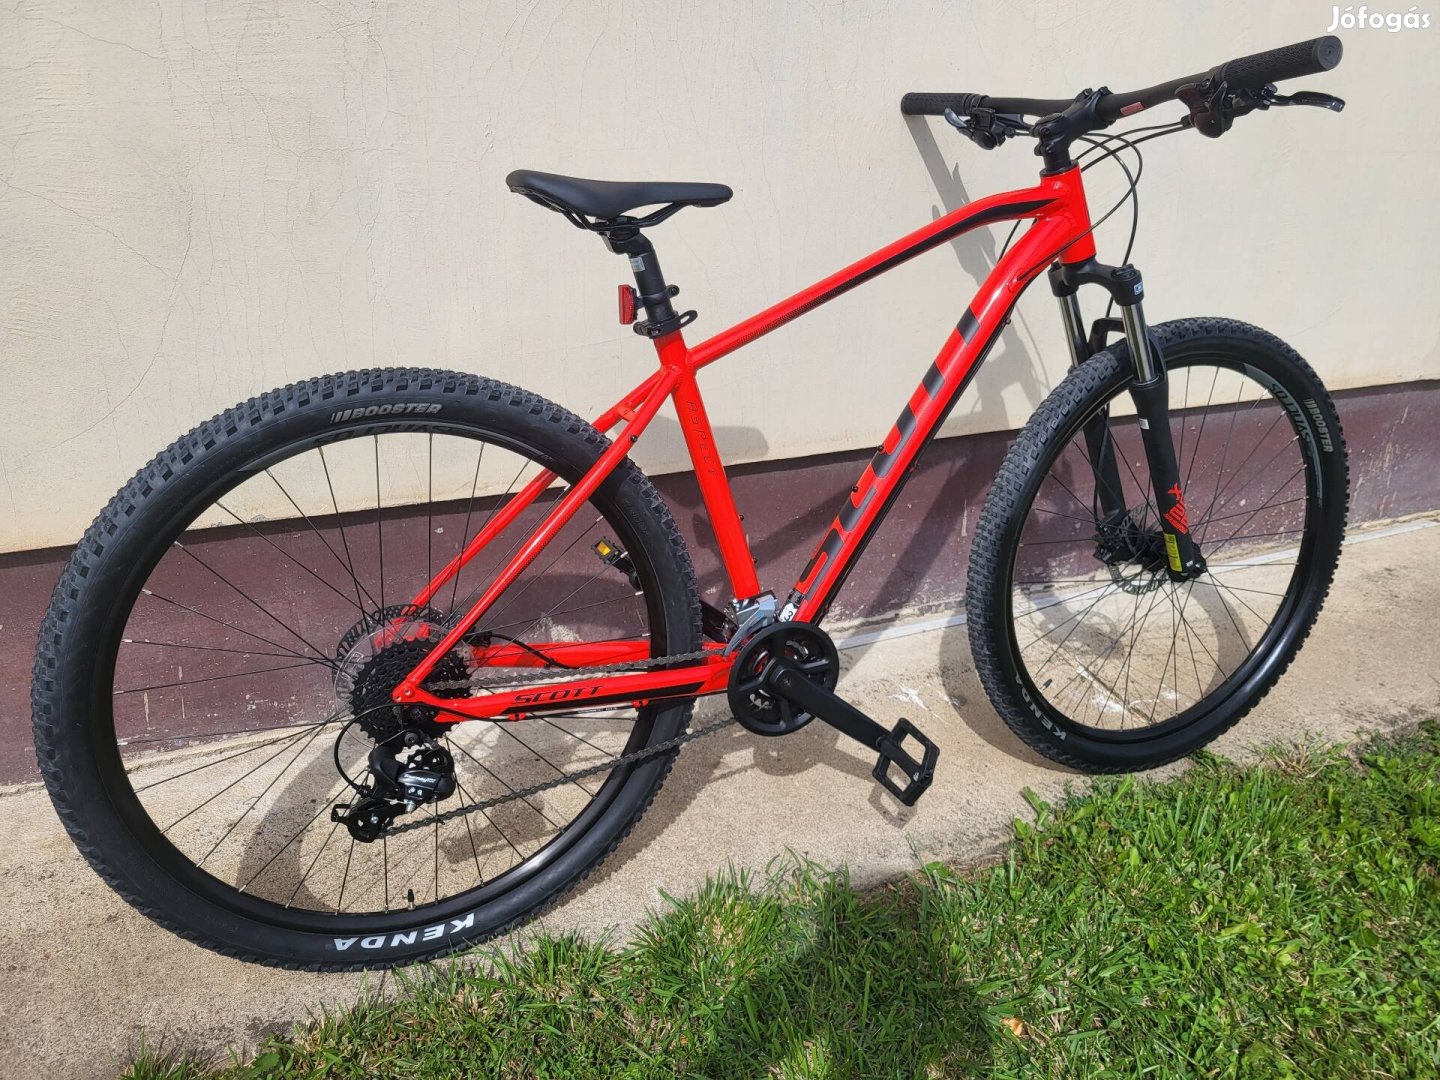 Scott aspect újszerű 29" mountin bike kerekpár bicikli tárcsafék